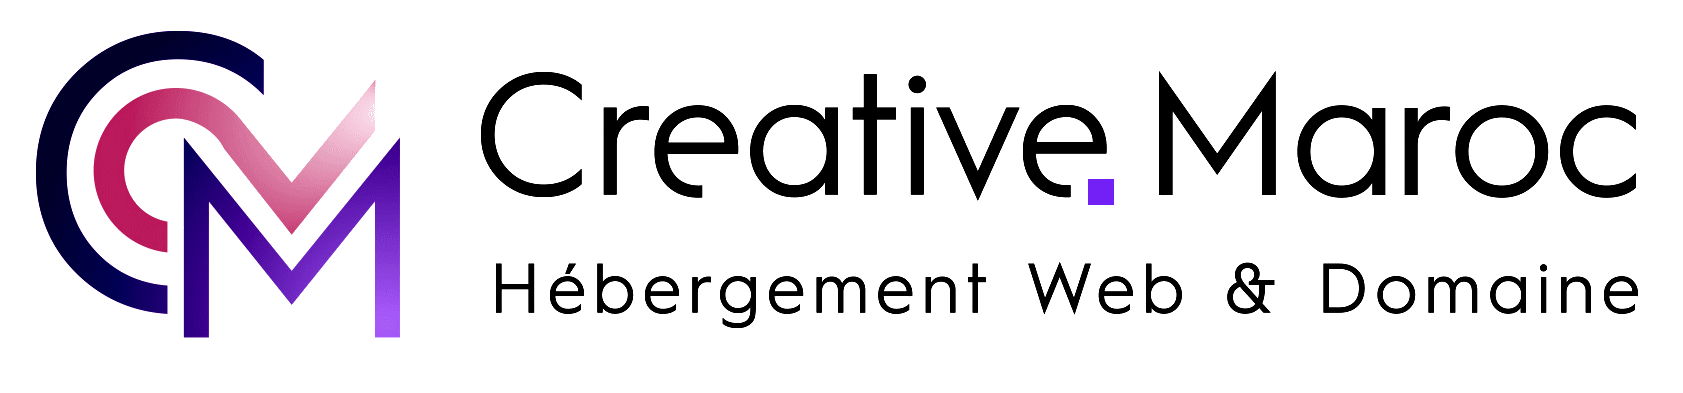 Creative Maroc - Hébergement web & Nom de domaine au Maroc